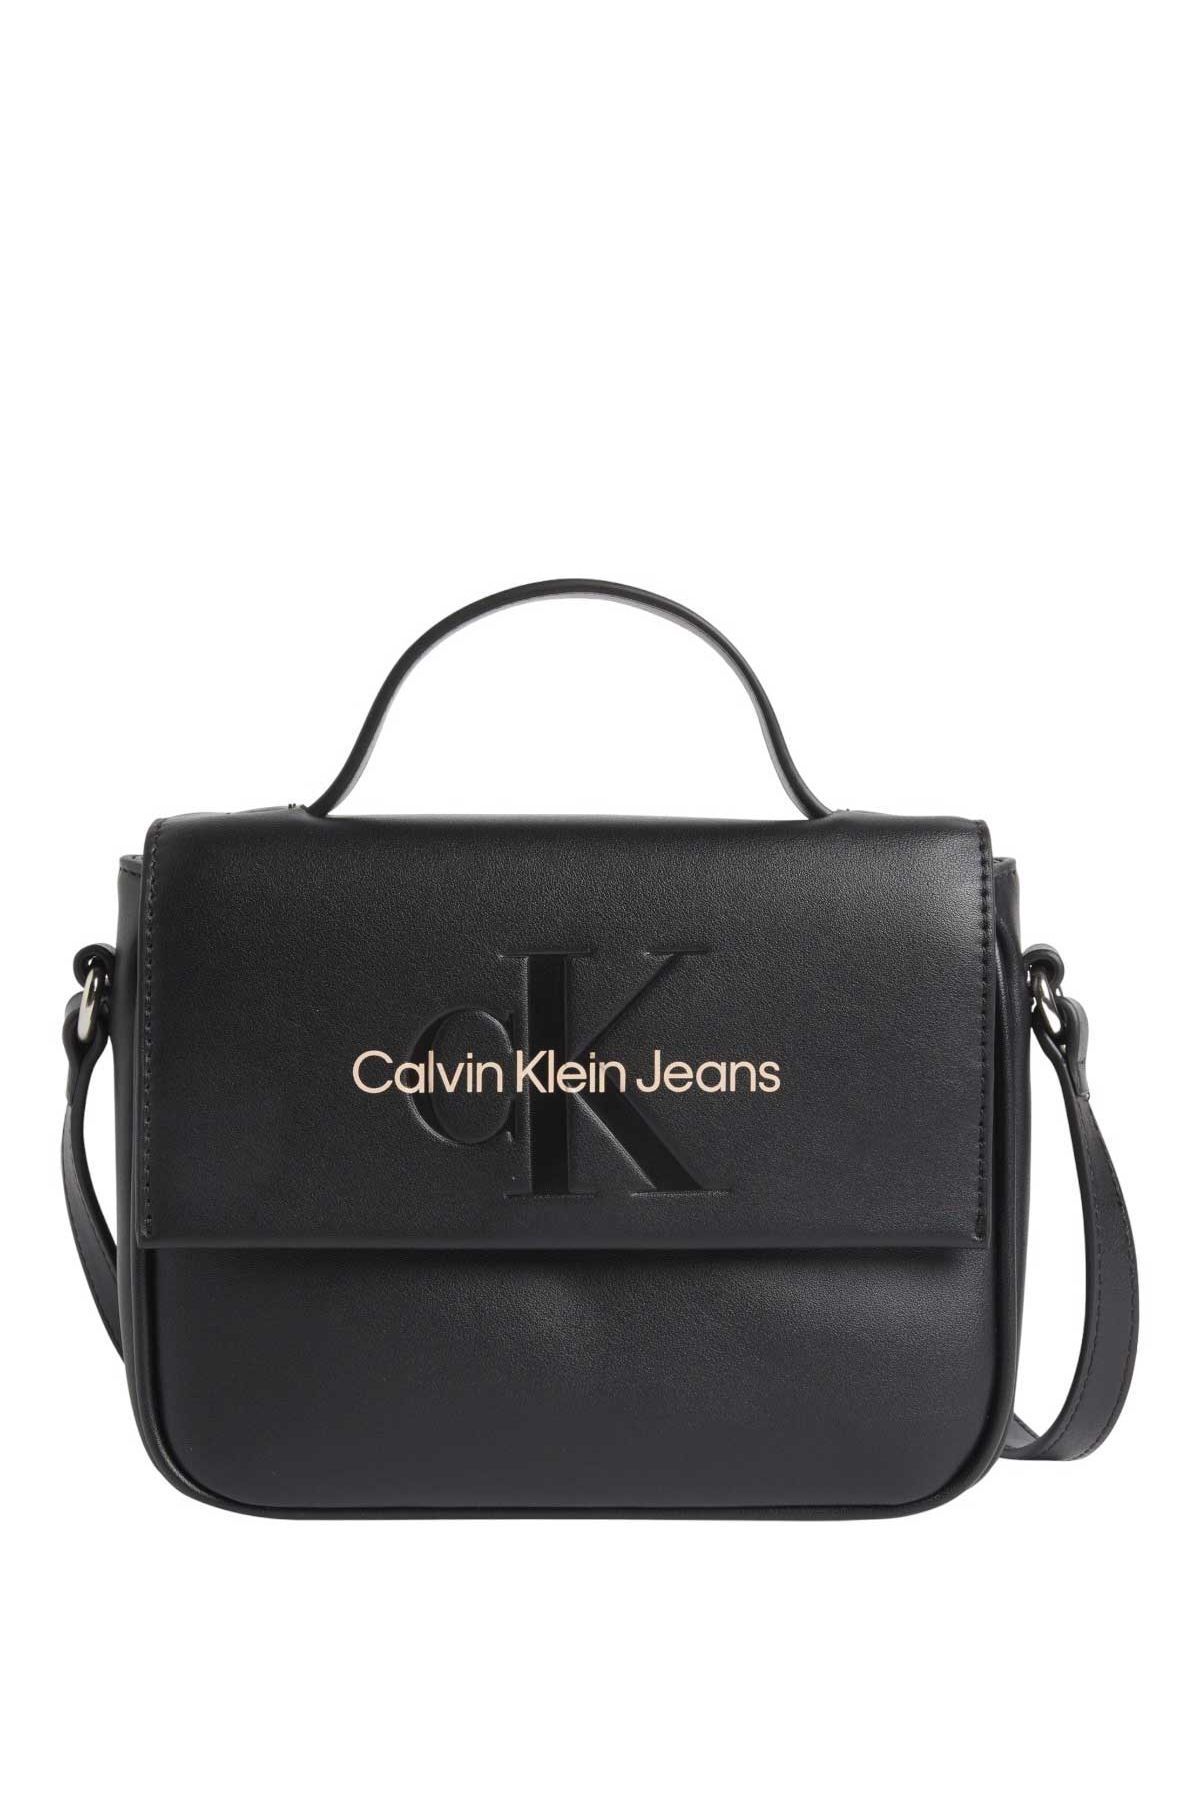 Calvin Klein Women's Calvin Klein Sculpted Women's Handbag